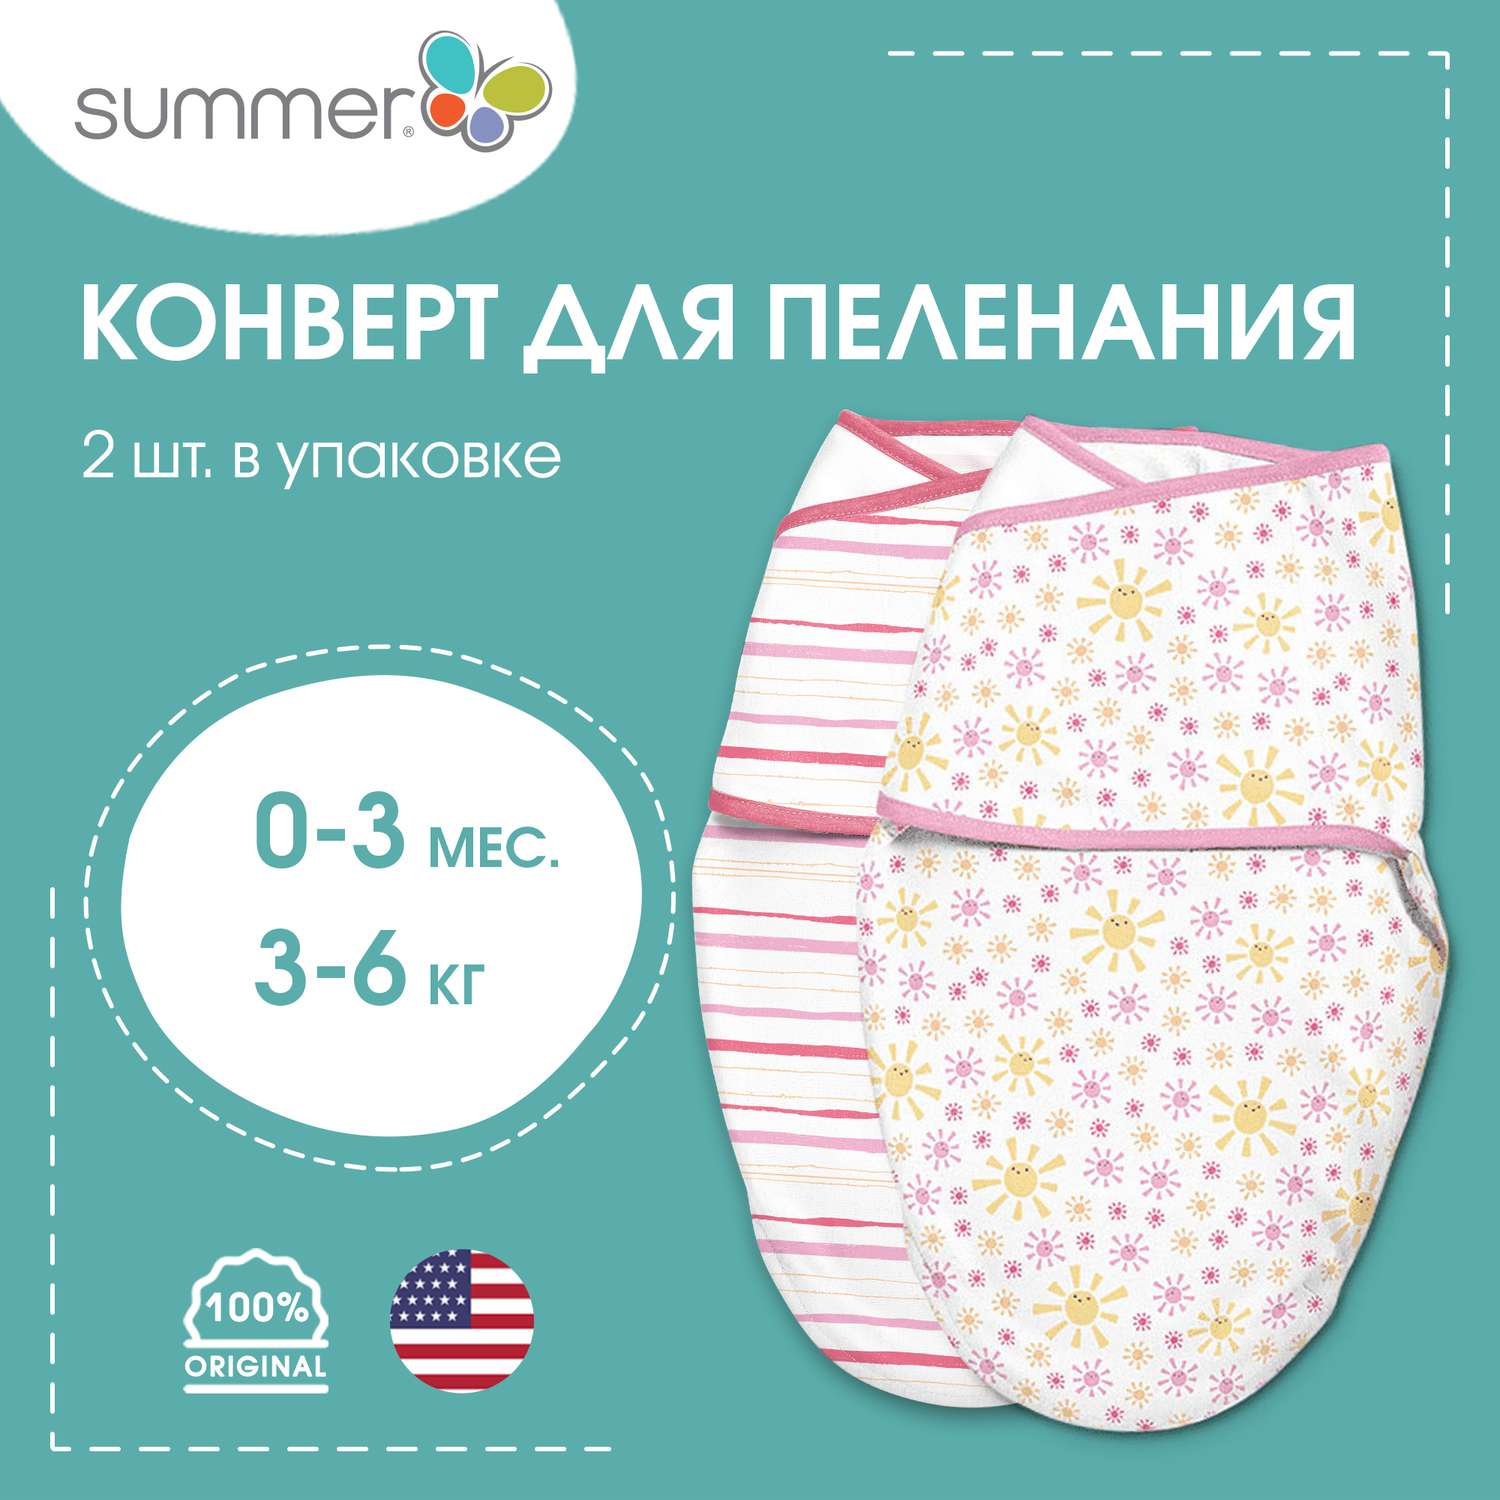 Конверт Summer Infant - фото 2